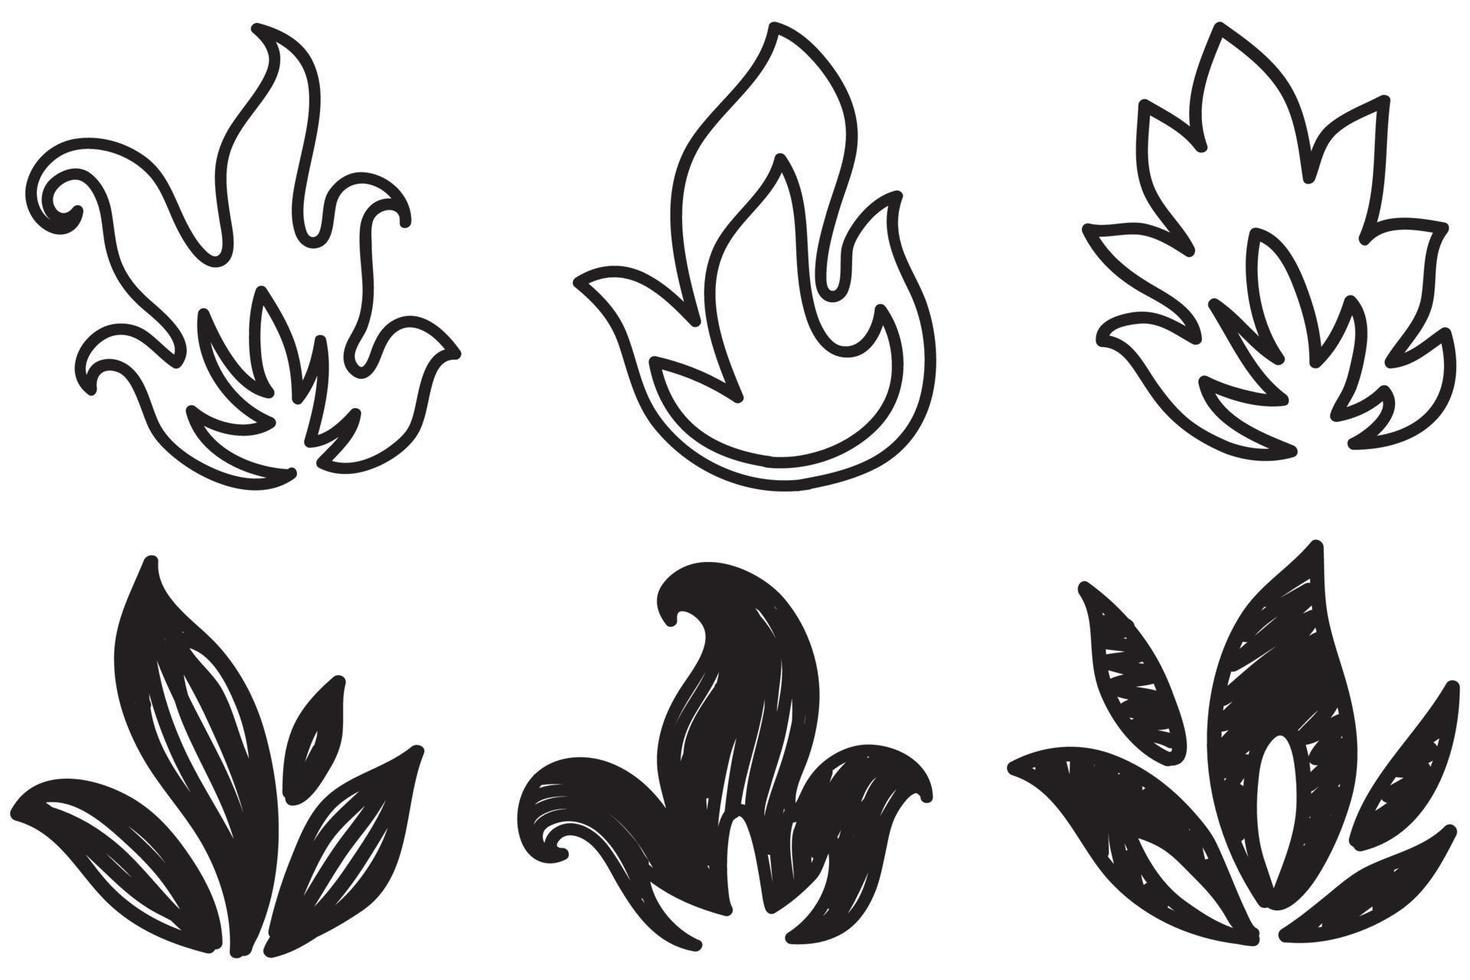 handritad brand ikoner. eld lågor ikoner vektor set. handritad doodle skiss brand, svartvit ritning. enkel brandsymbol.